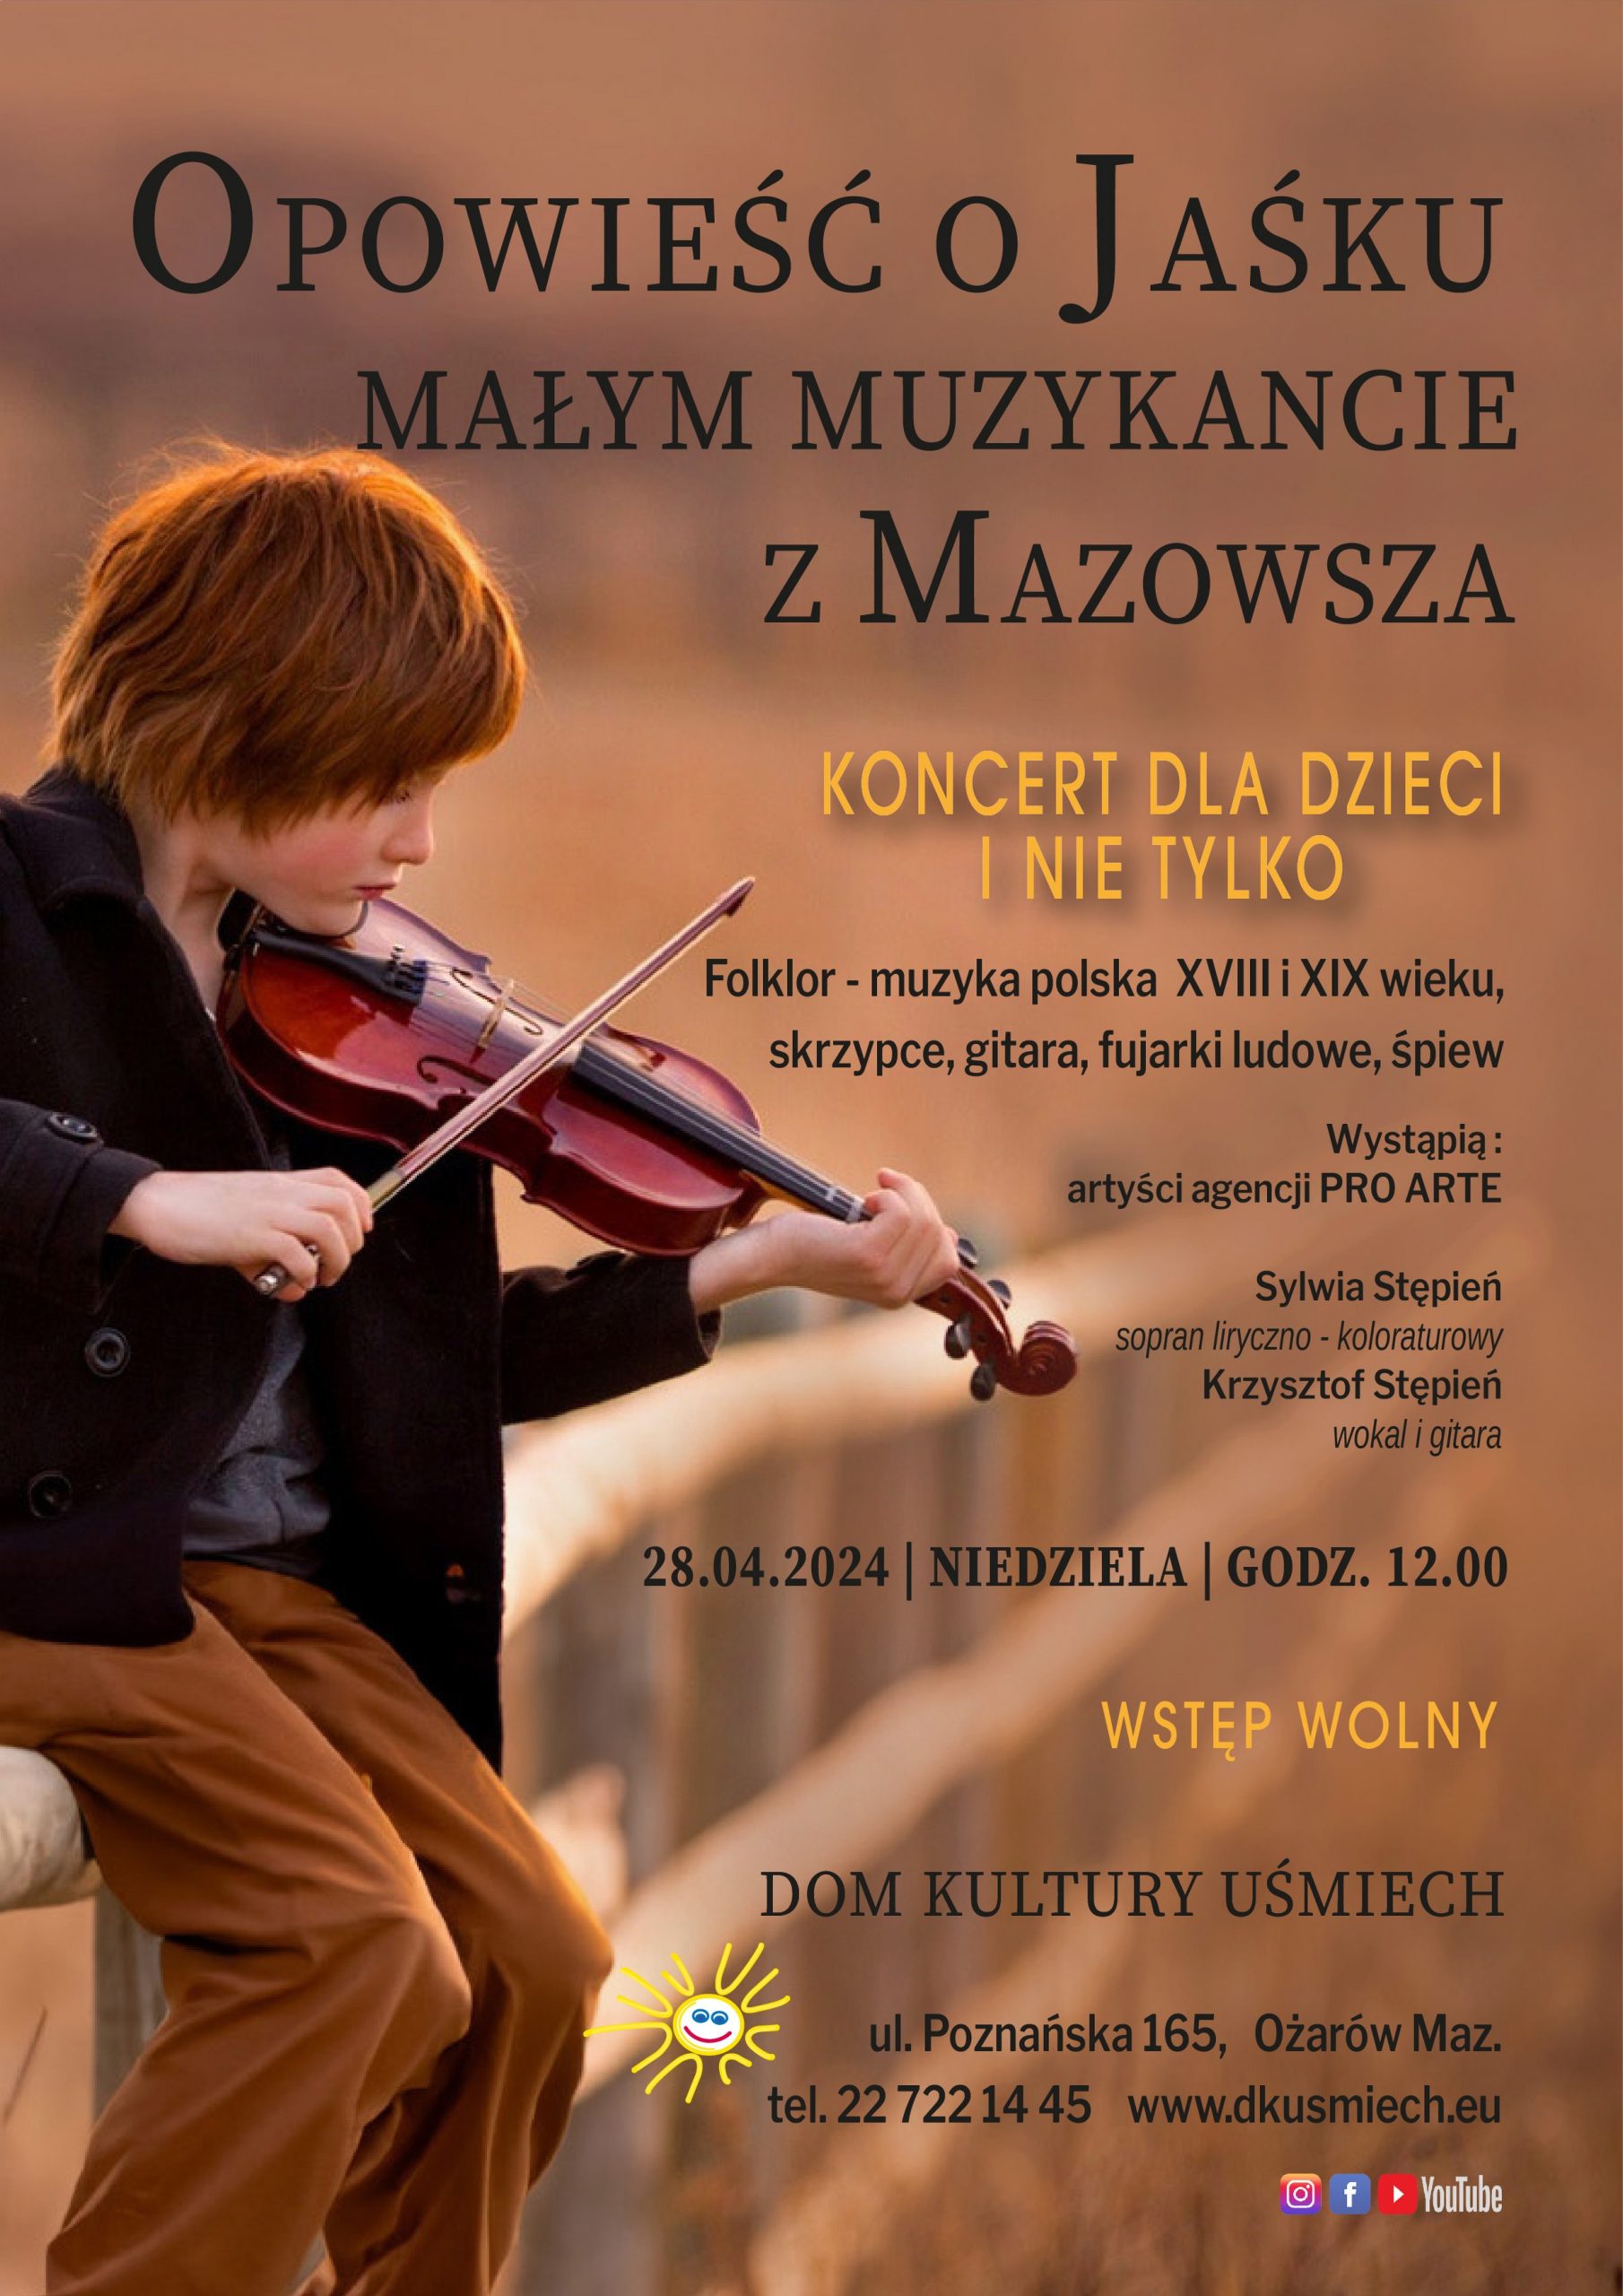 Plakat - koncert dla dzieci Opowieść o Jaśku, małym muzykancie z Mazowsza